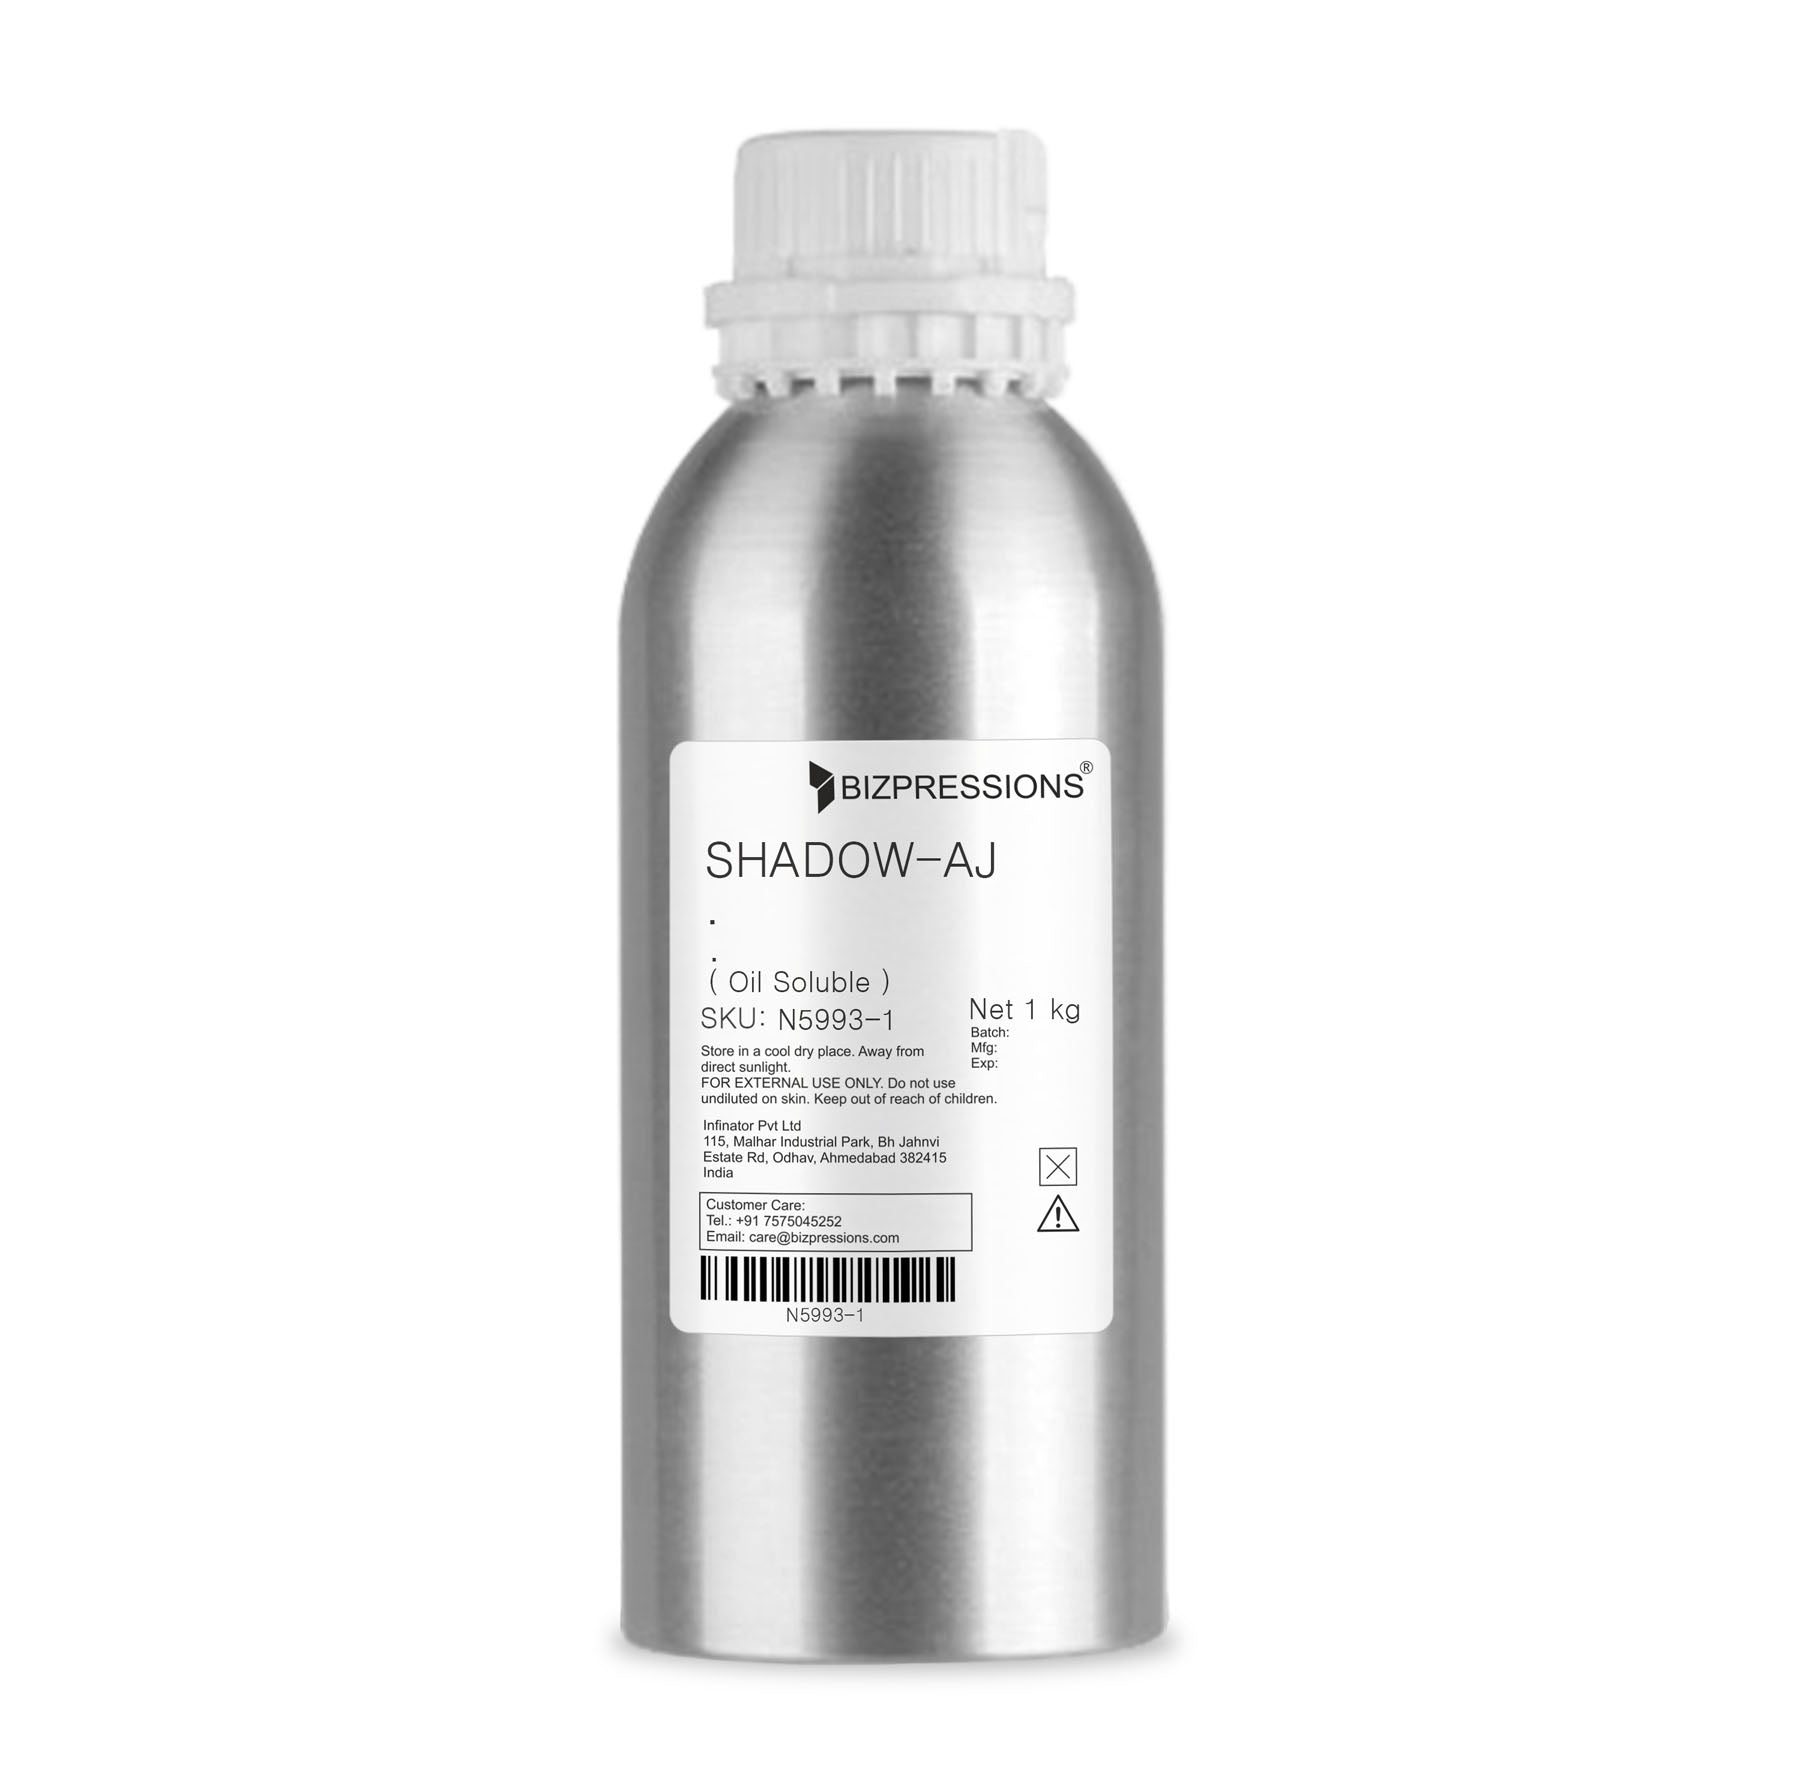 SHADOW-AJ - Fragrance ( Oil Soluble ) - 1 kg